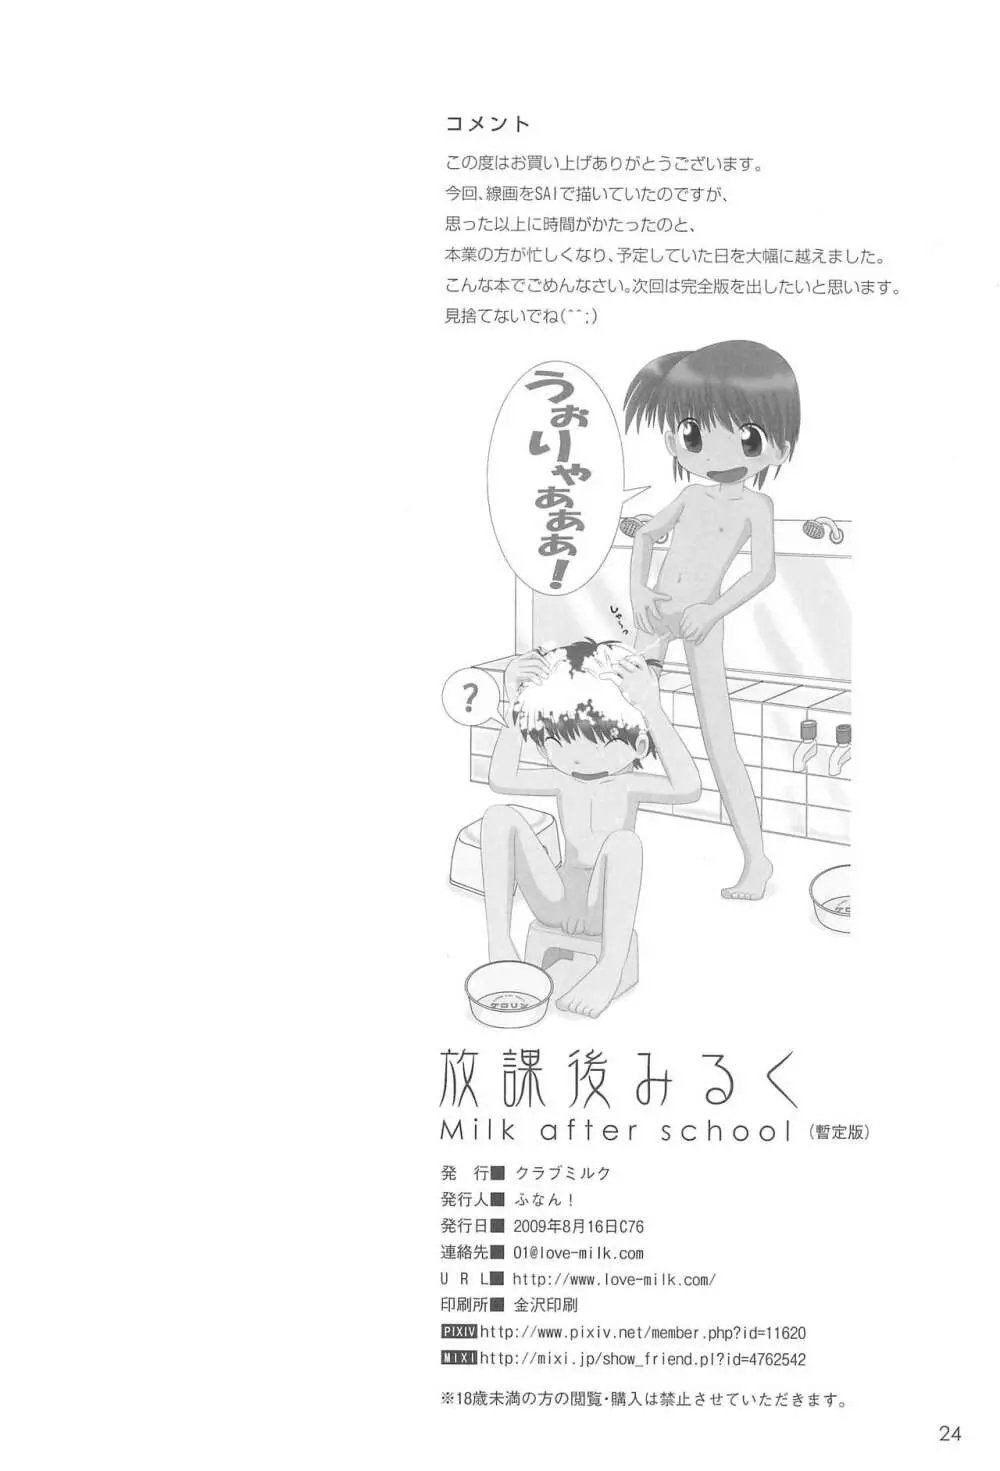 放課後みるく - Milk After School - Page.28